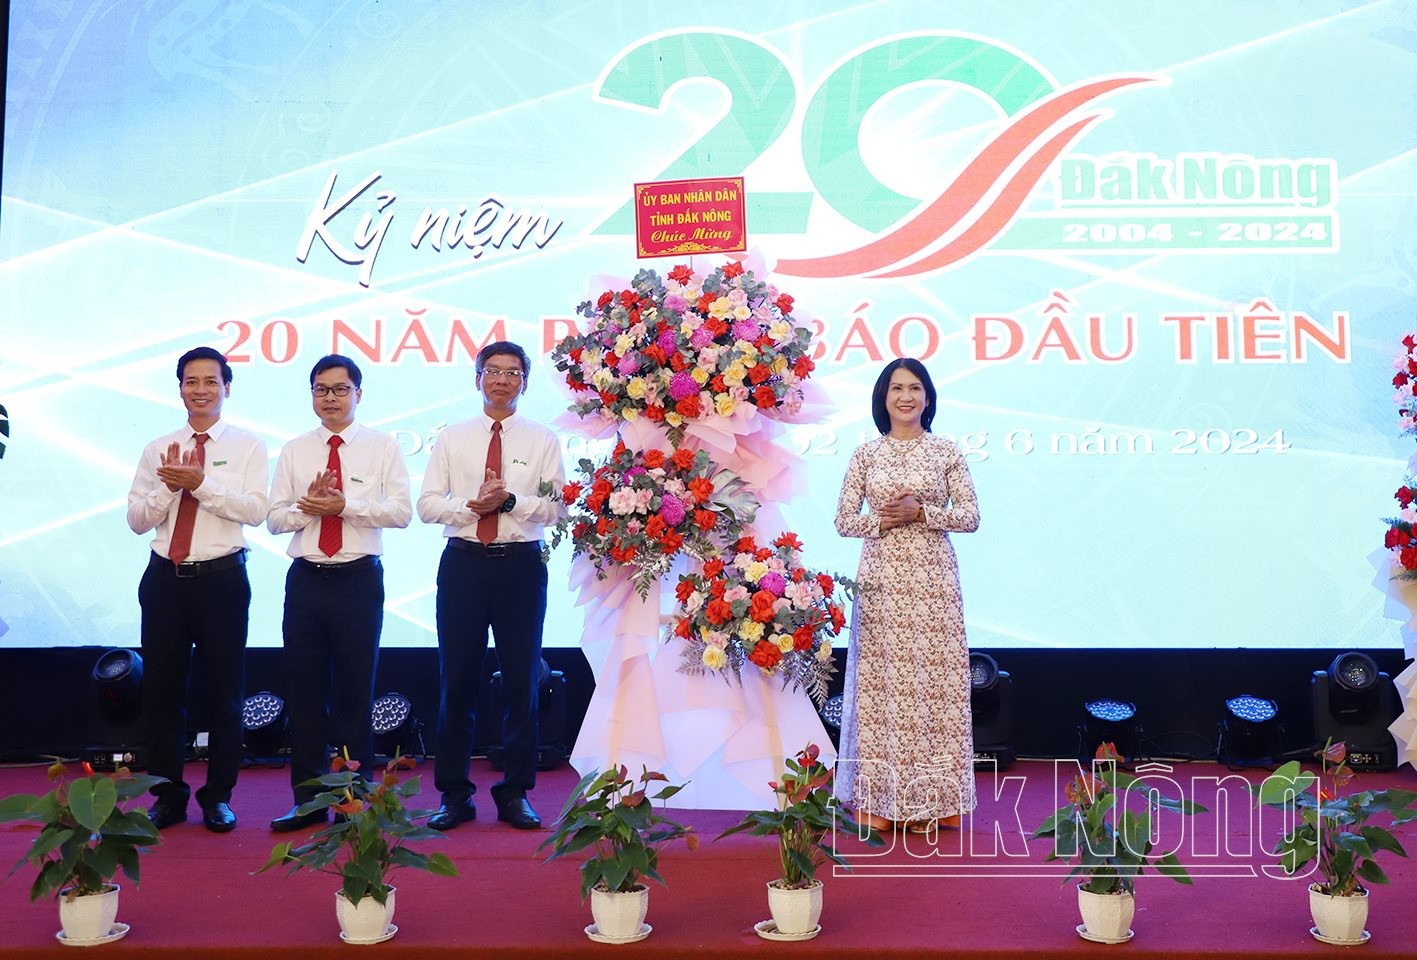 Phó Chủ tịch UBND tỉnh Đắk Nông Tôn Thị Ngọc Hạnh tặng lẵng hoa của UBND tỉnh chúc mừng Báo Đắk Nông